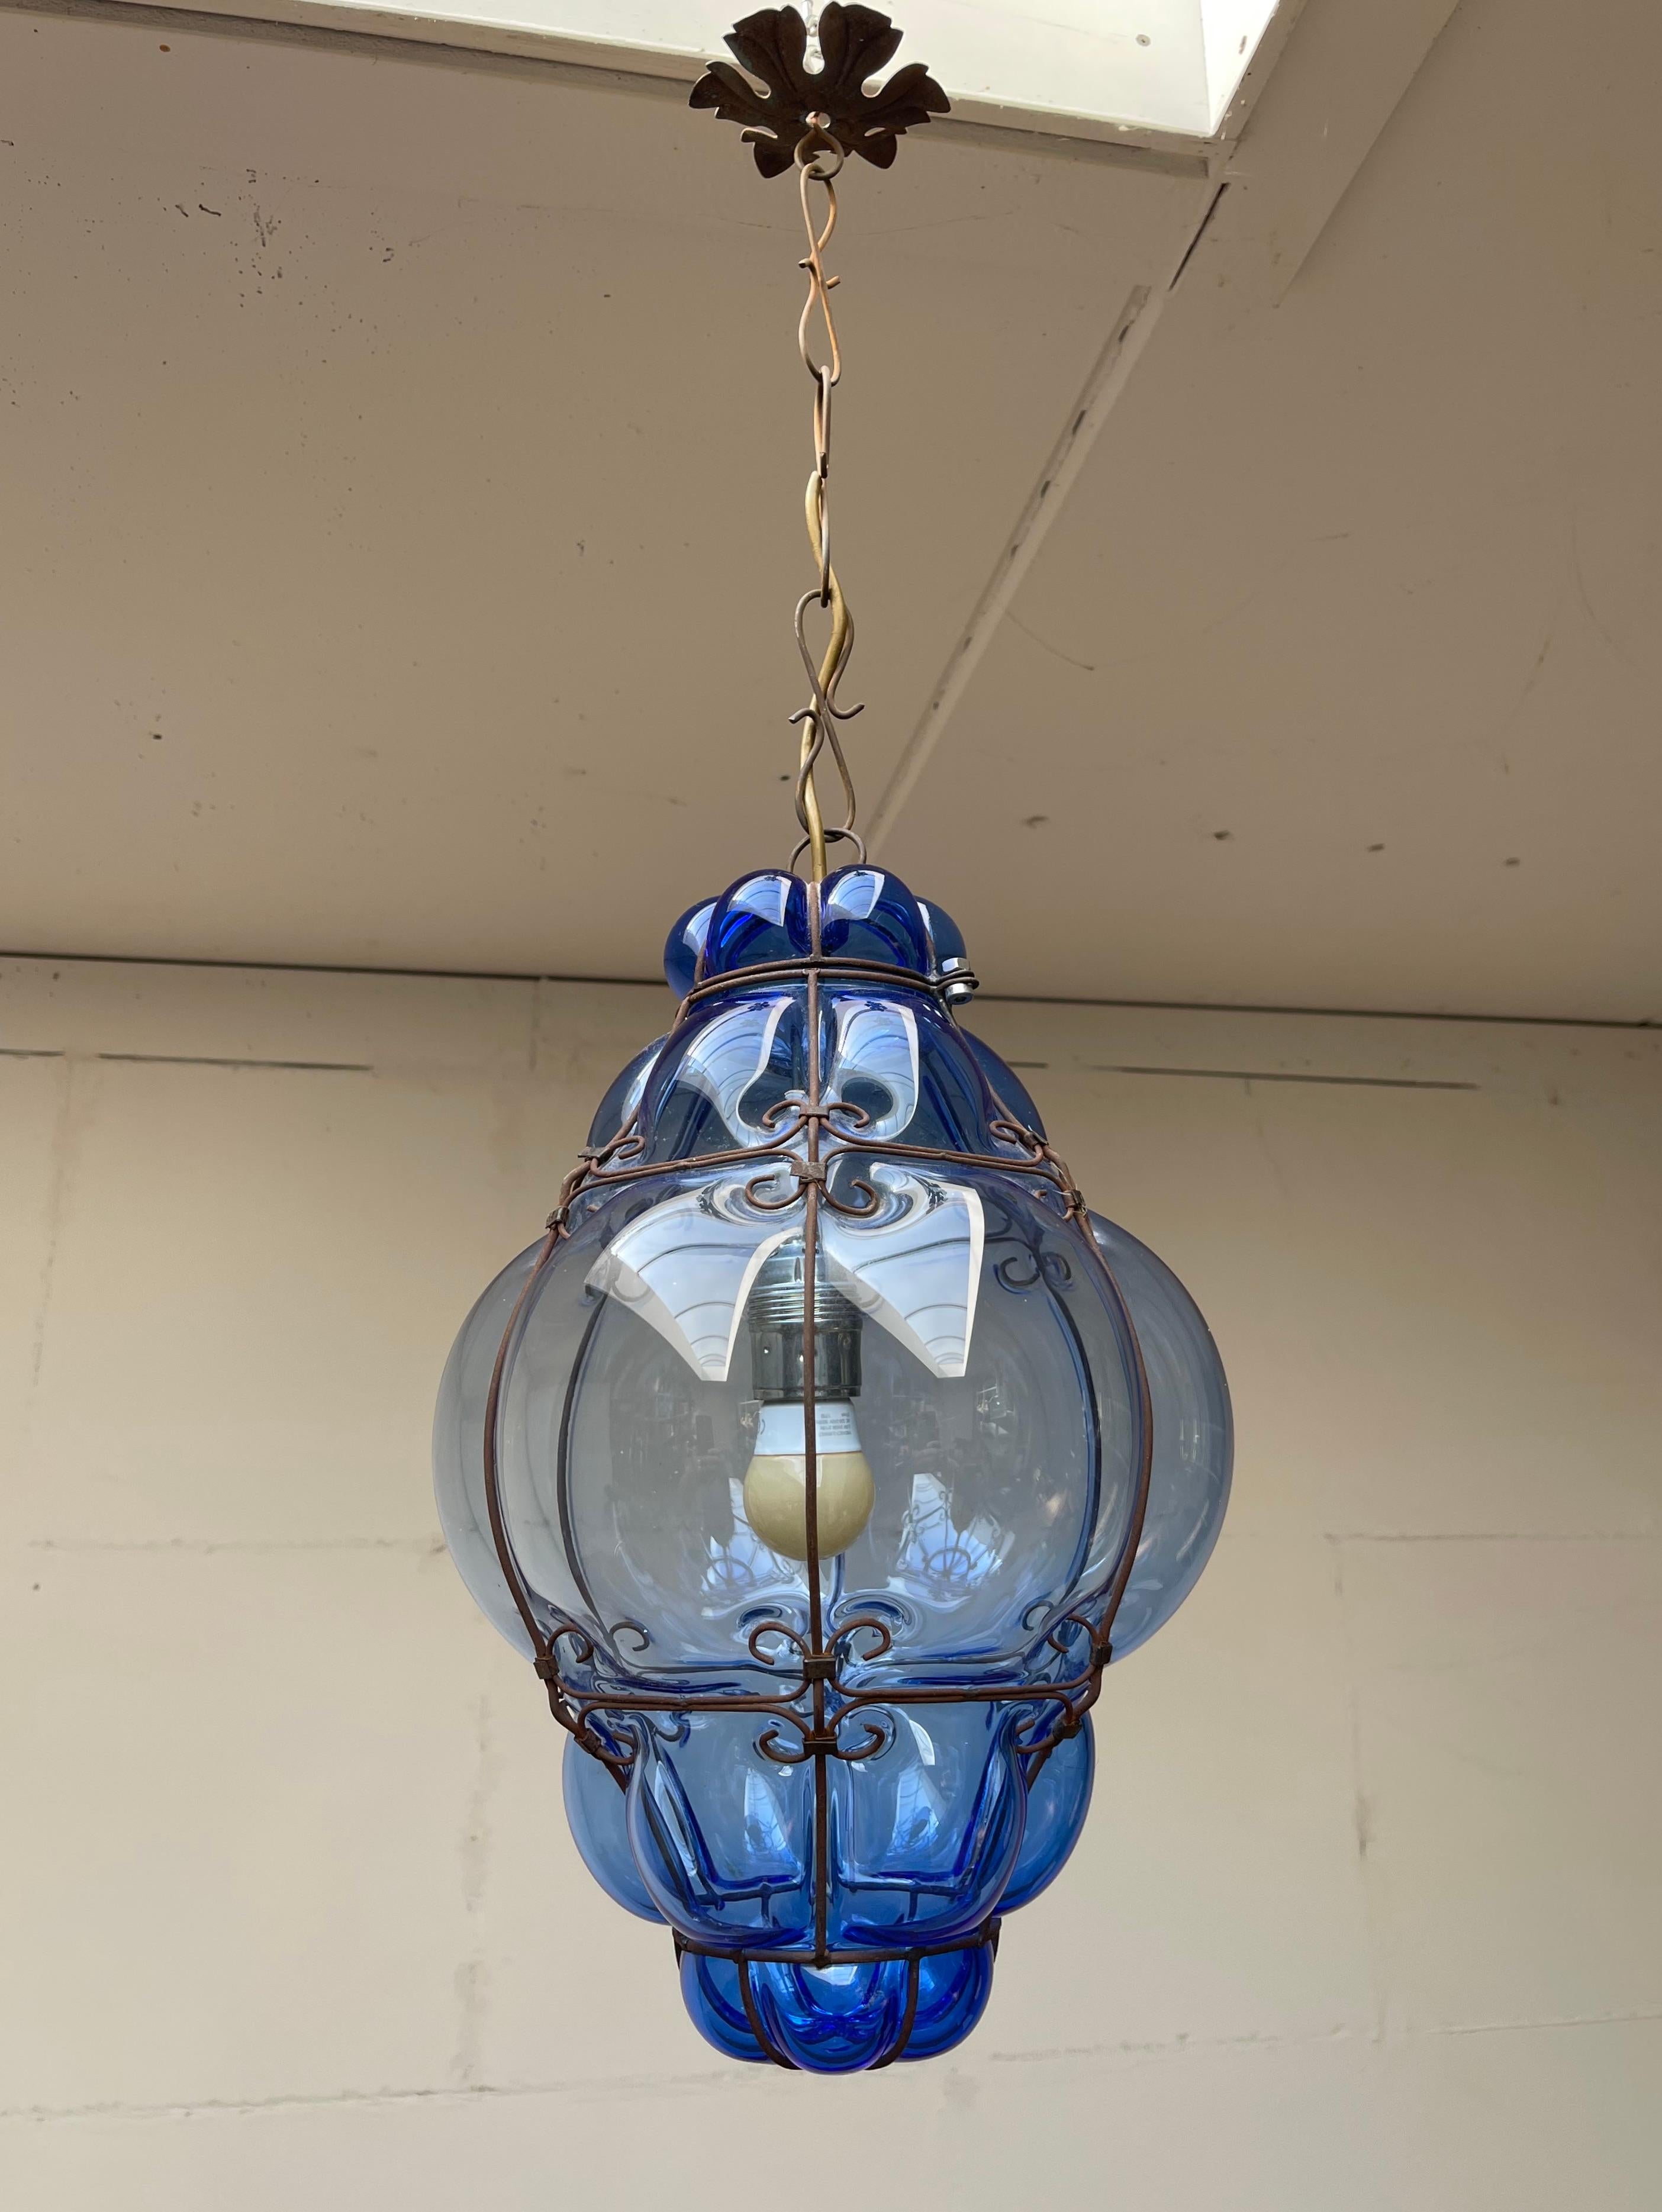 Schöne Sapphire Farbe und praktische Größe italienische Leuchte mit mundgeblasenem Glas in einem Metallrahmen. 

Wenn Sie auf der Suche nach einer seltenen und stilvollen Murano-Leuchte für Ihr Zuhause sind, dann könnte dieses handgefertigte,